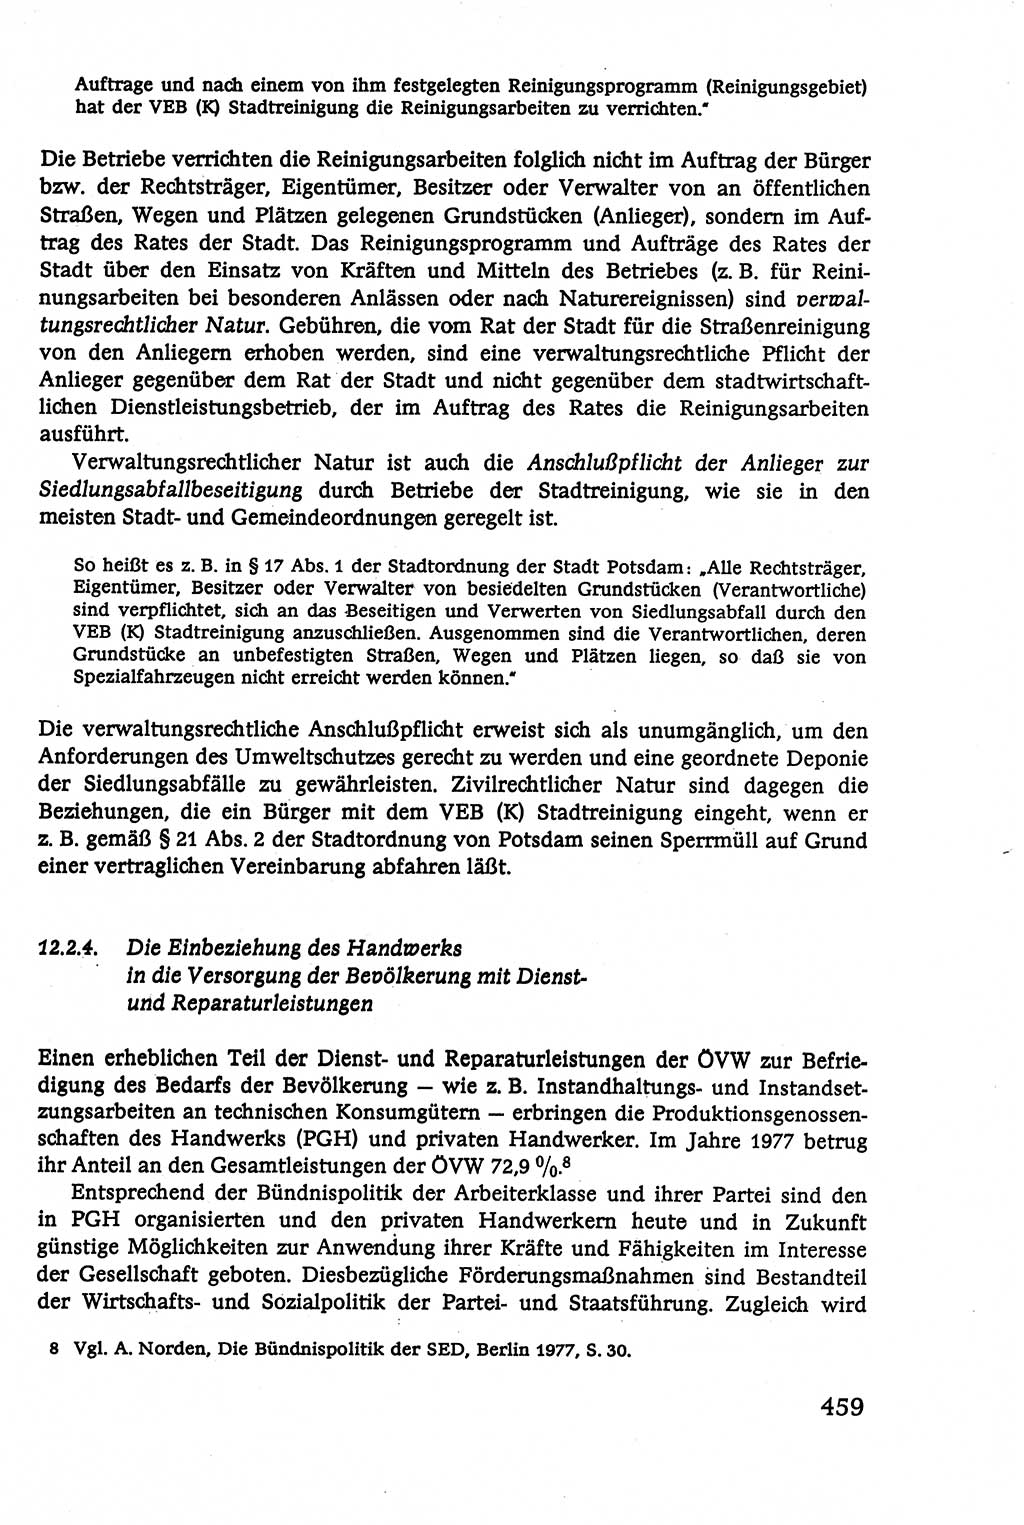 Verwaltungsrecht [Deutsche Demokratische Republik (DDR)], Lehrbuch 1979, Seite 459 (Verw.-R. DDR Lb. 1979, S. 459)